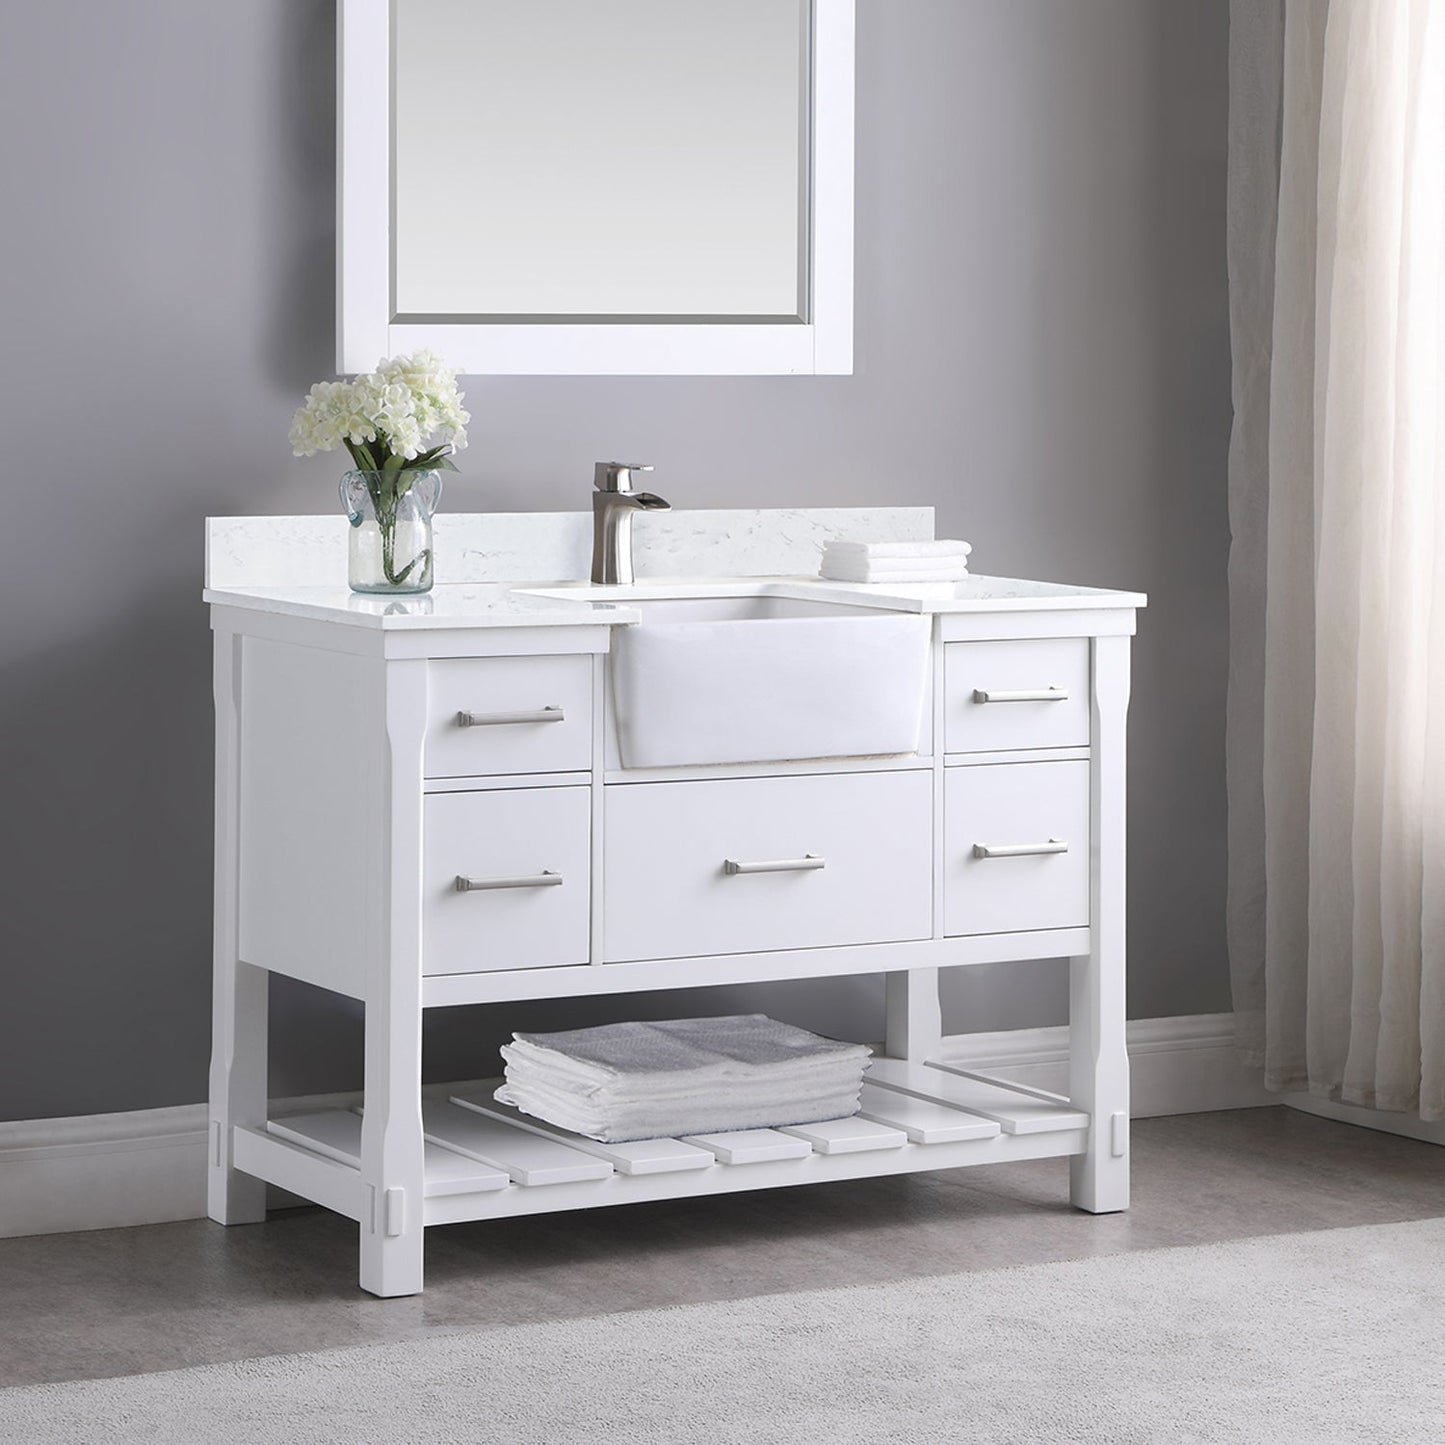 Georgia 48" Single Bathroom Vanity Set in White and Aosta White Composite Stone Top with White Farmhouse Basin without Mirror